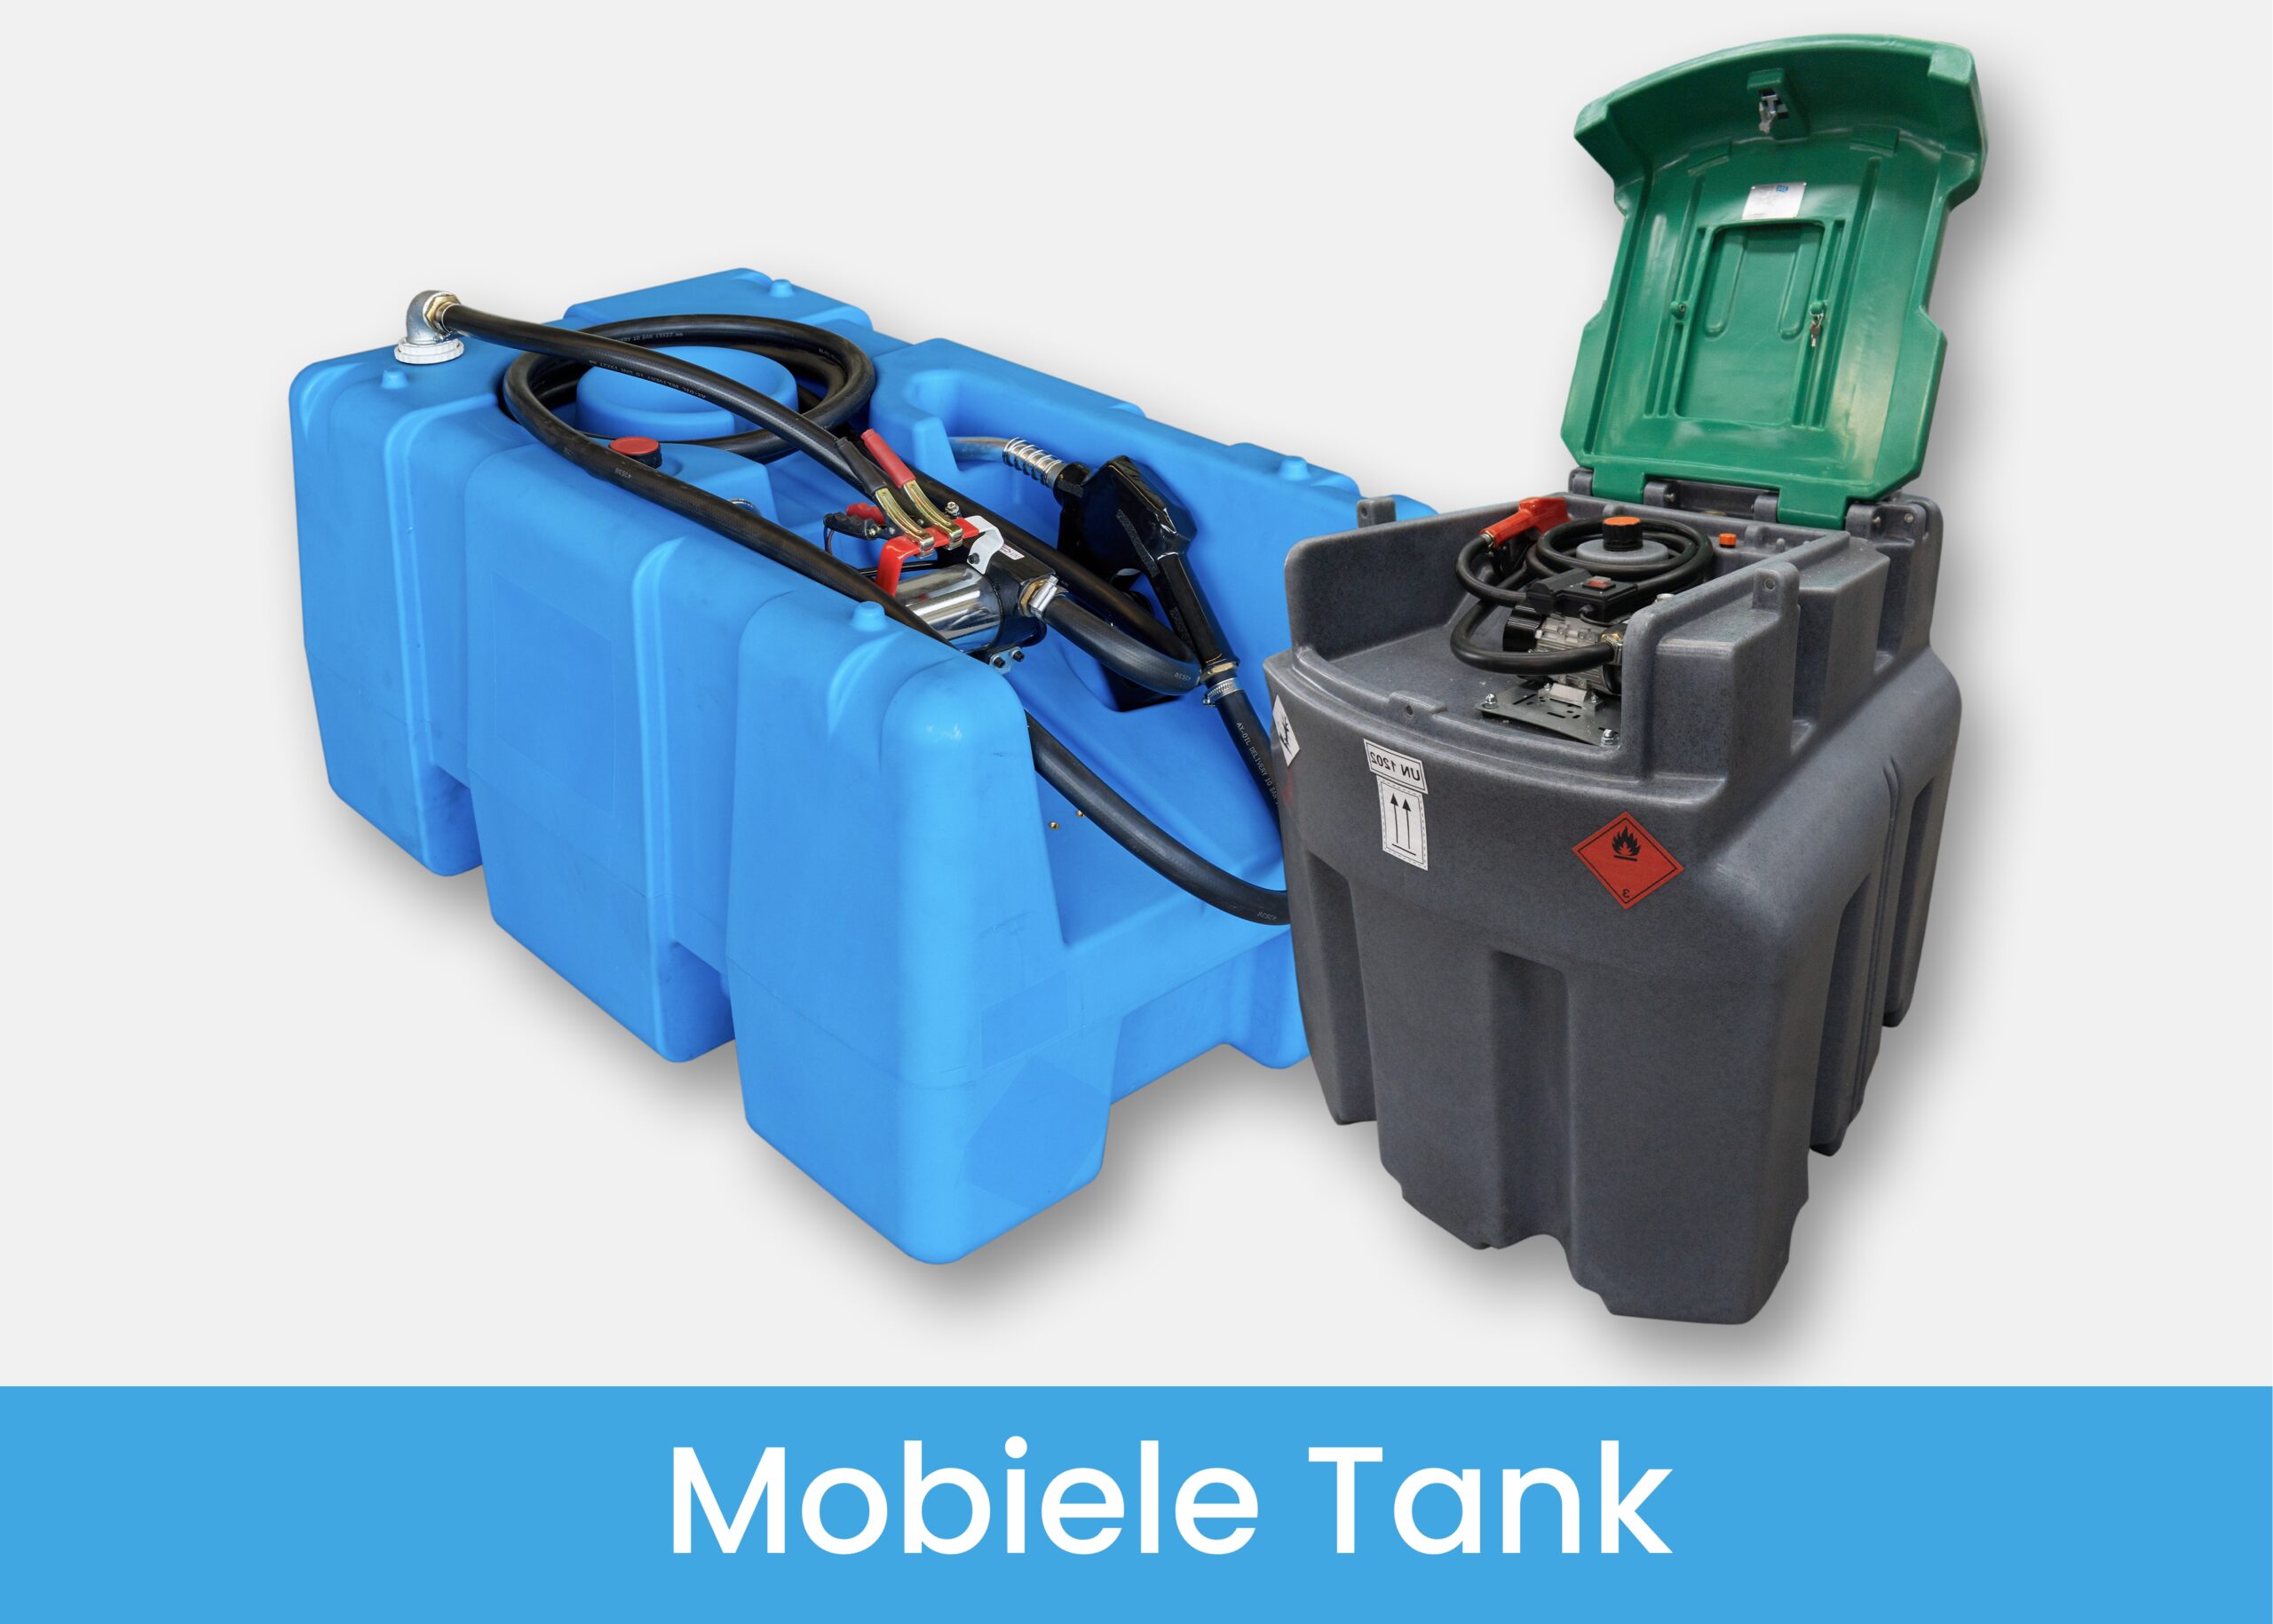 NL Mobiele Tank